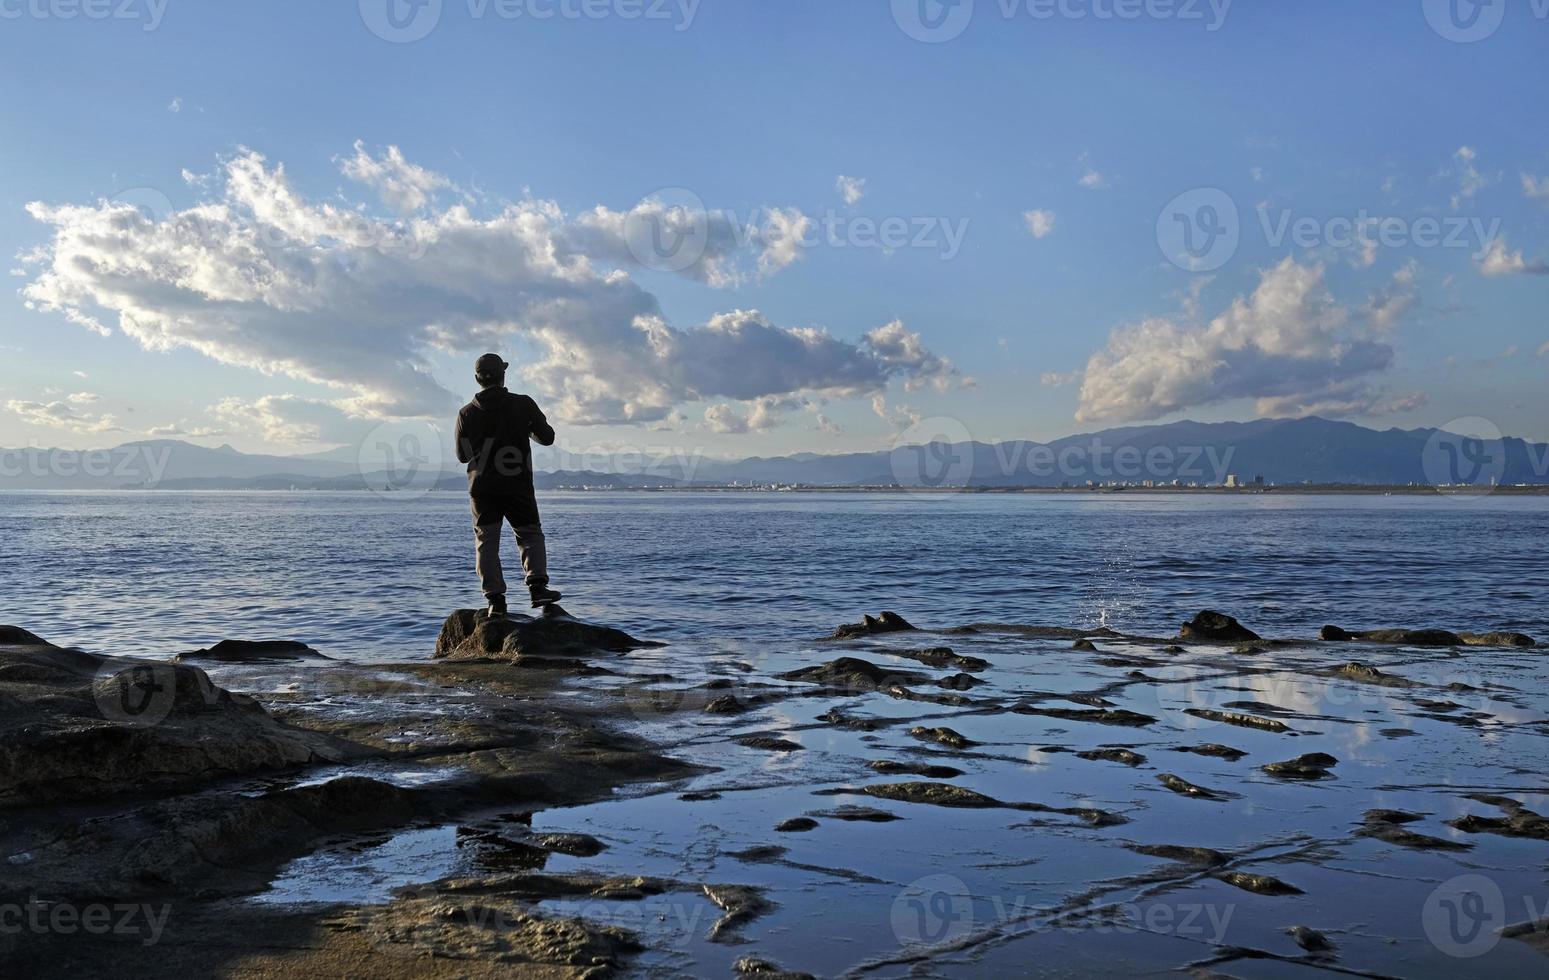 paysage spectaculaire sur la côte d'enoshima, au japon, avec un pêcheur solitaire debout au bord de l'eau photo